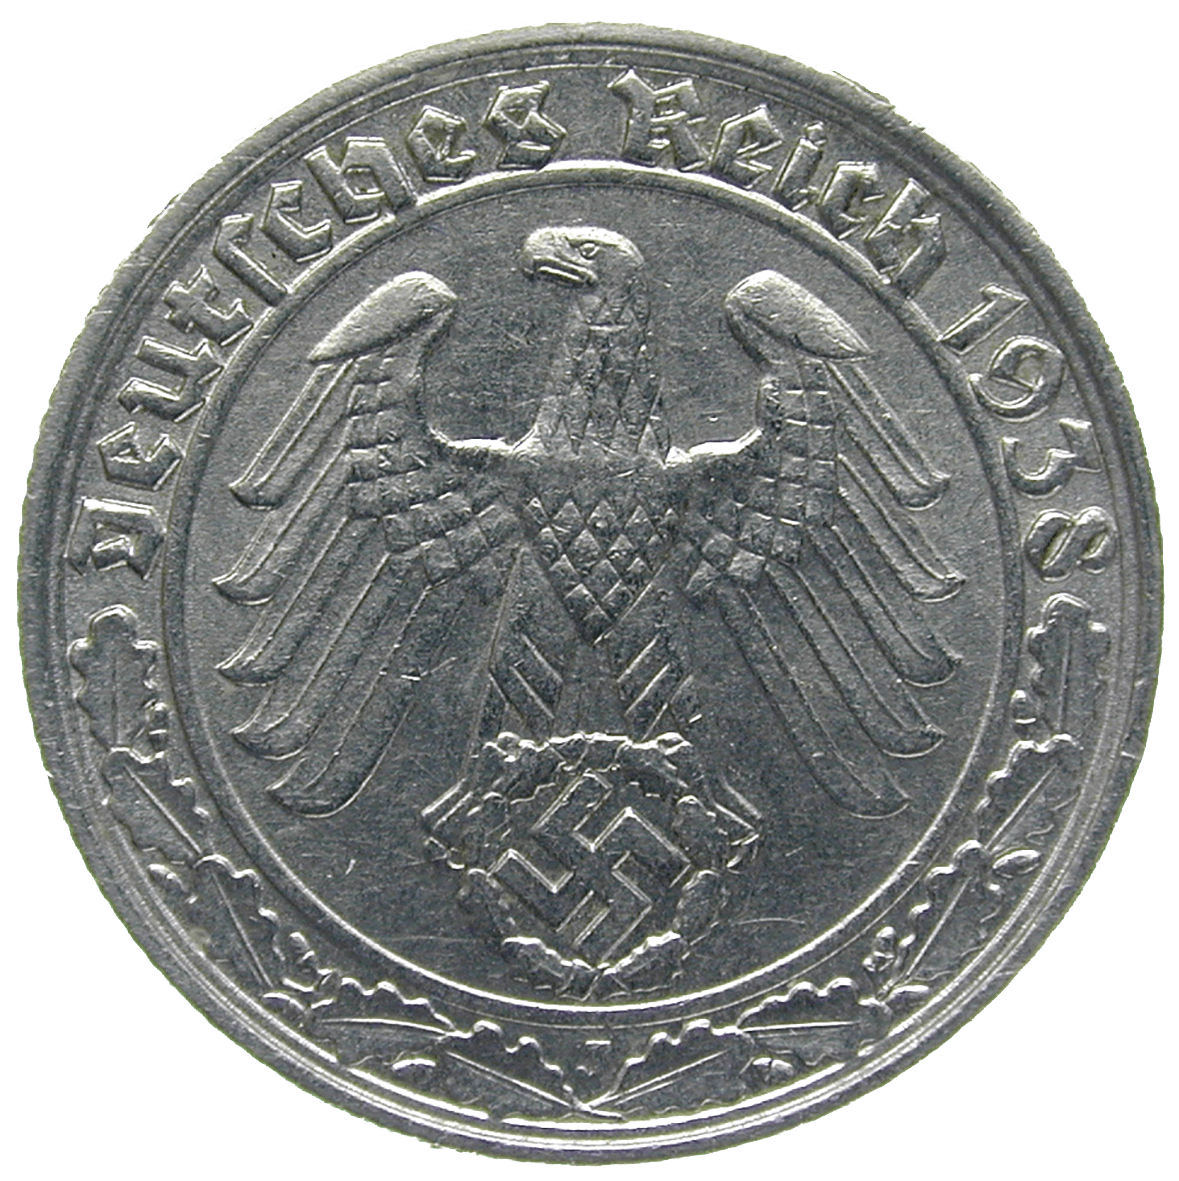 German Third Reich, 50 Reichspfennig 1938 (obverse)